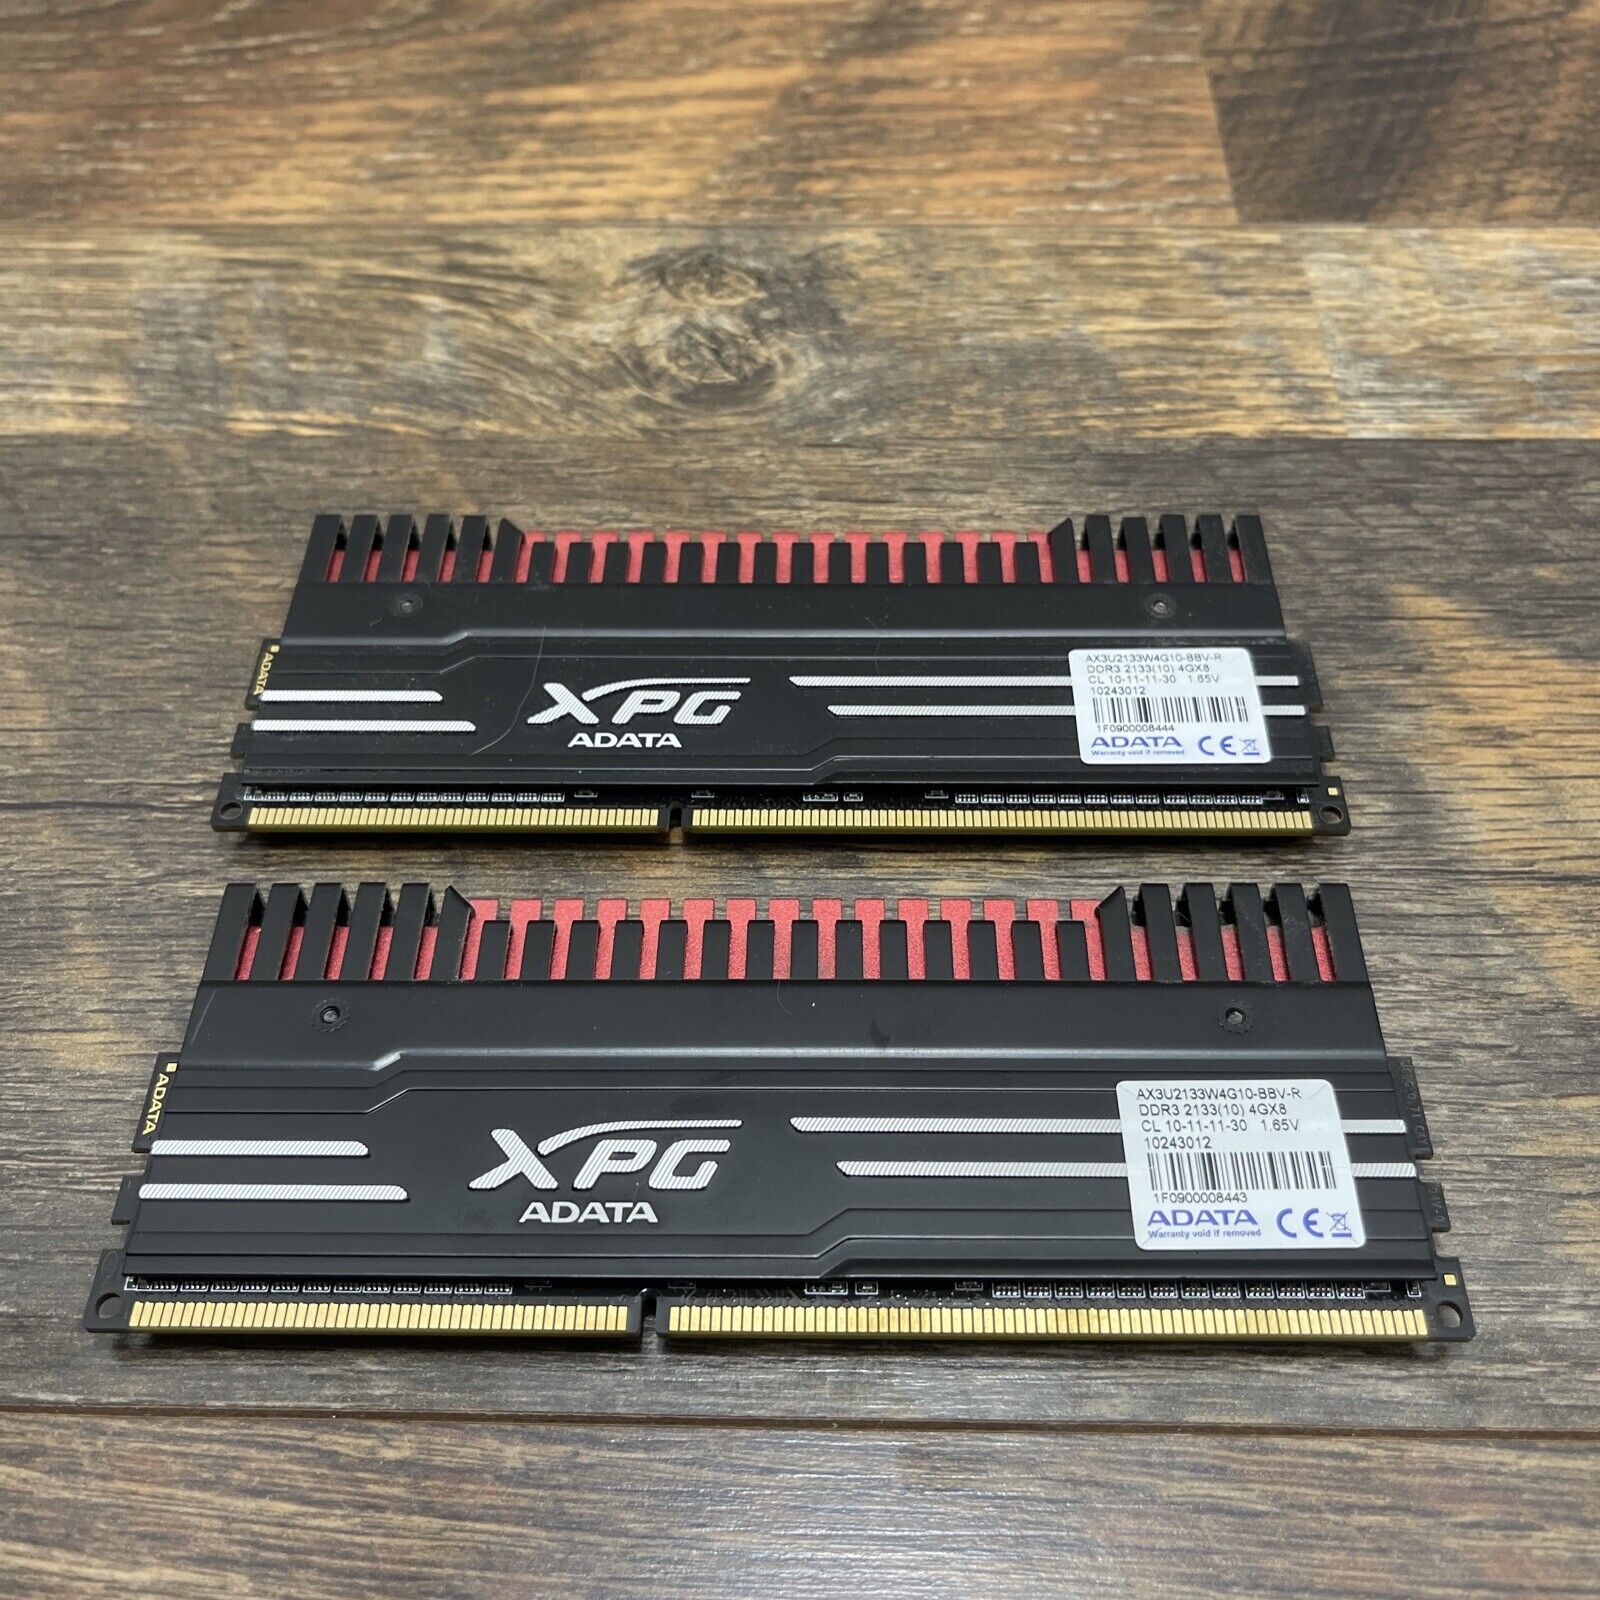 ADATA XPG DDR3 4GB 2133MHZ Pair AX3U2133W4G10-BBV-R